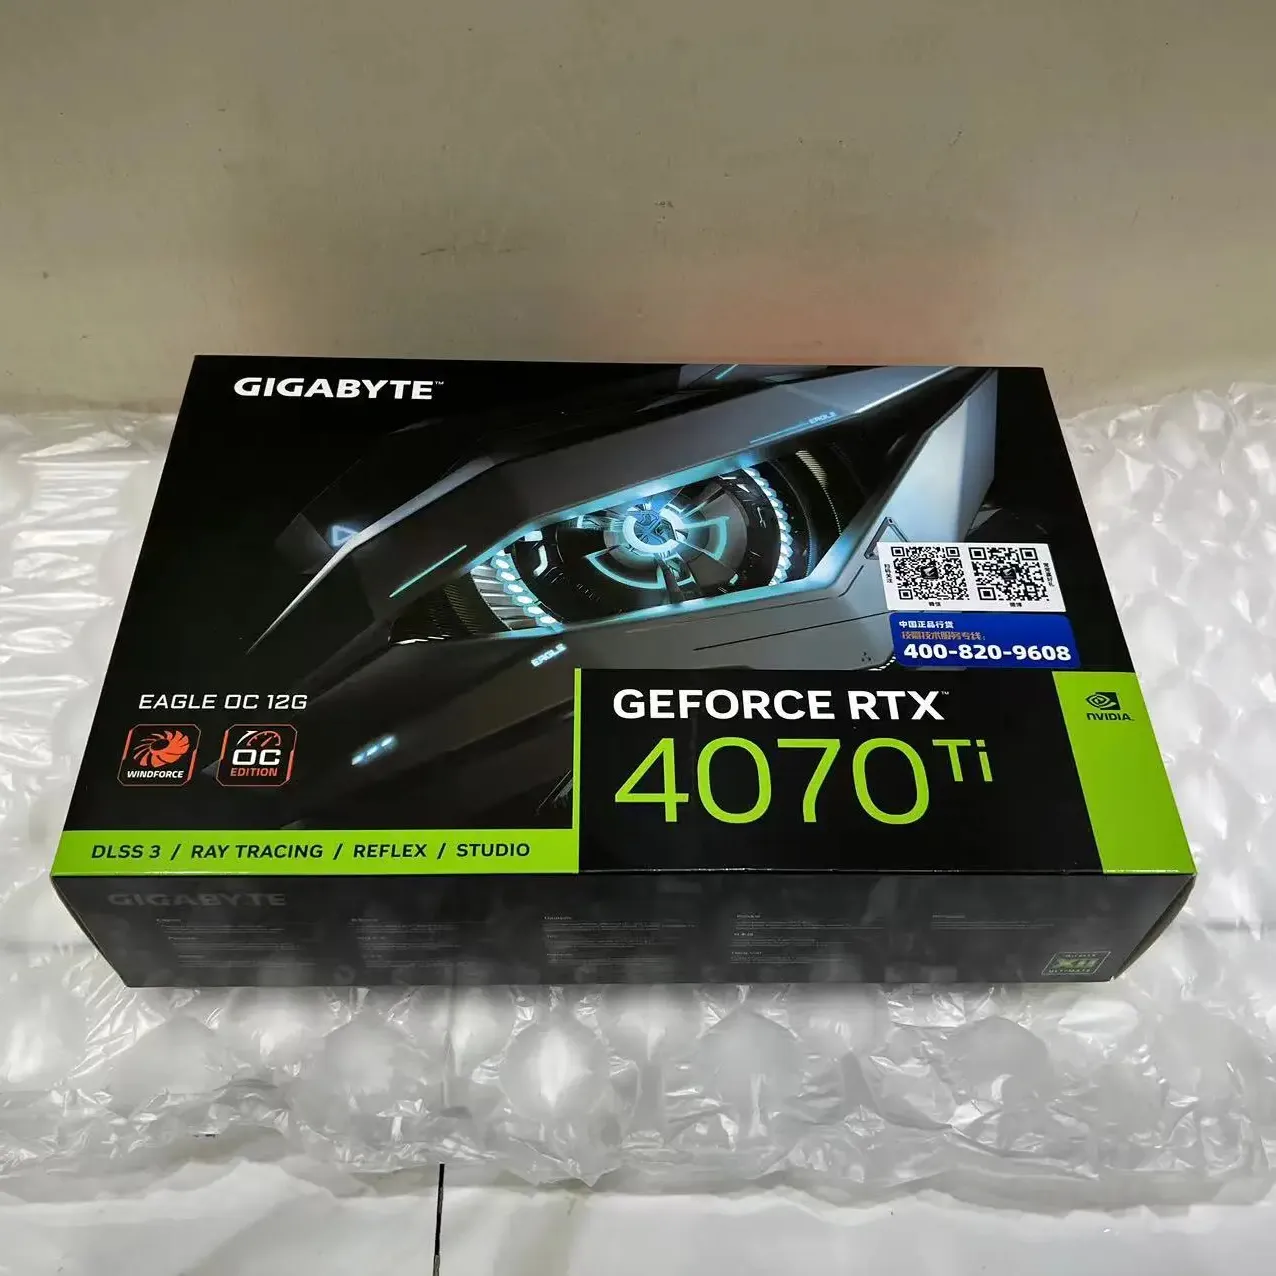 GIGABYTE GeForce RTX 4070 Ti EAGLE 12Gゲーミンググラフィックカード、2610 MHzコアクロック12GBメモリサイズ (GV-N407TEAGLE-12GD)